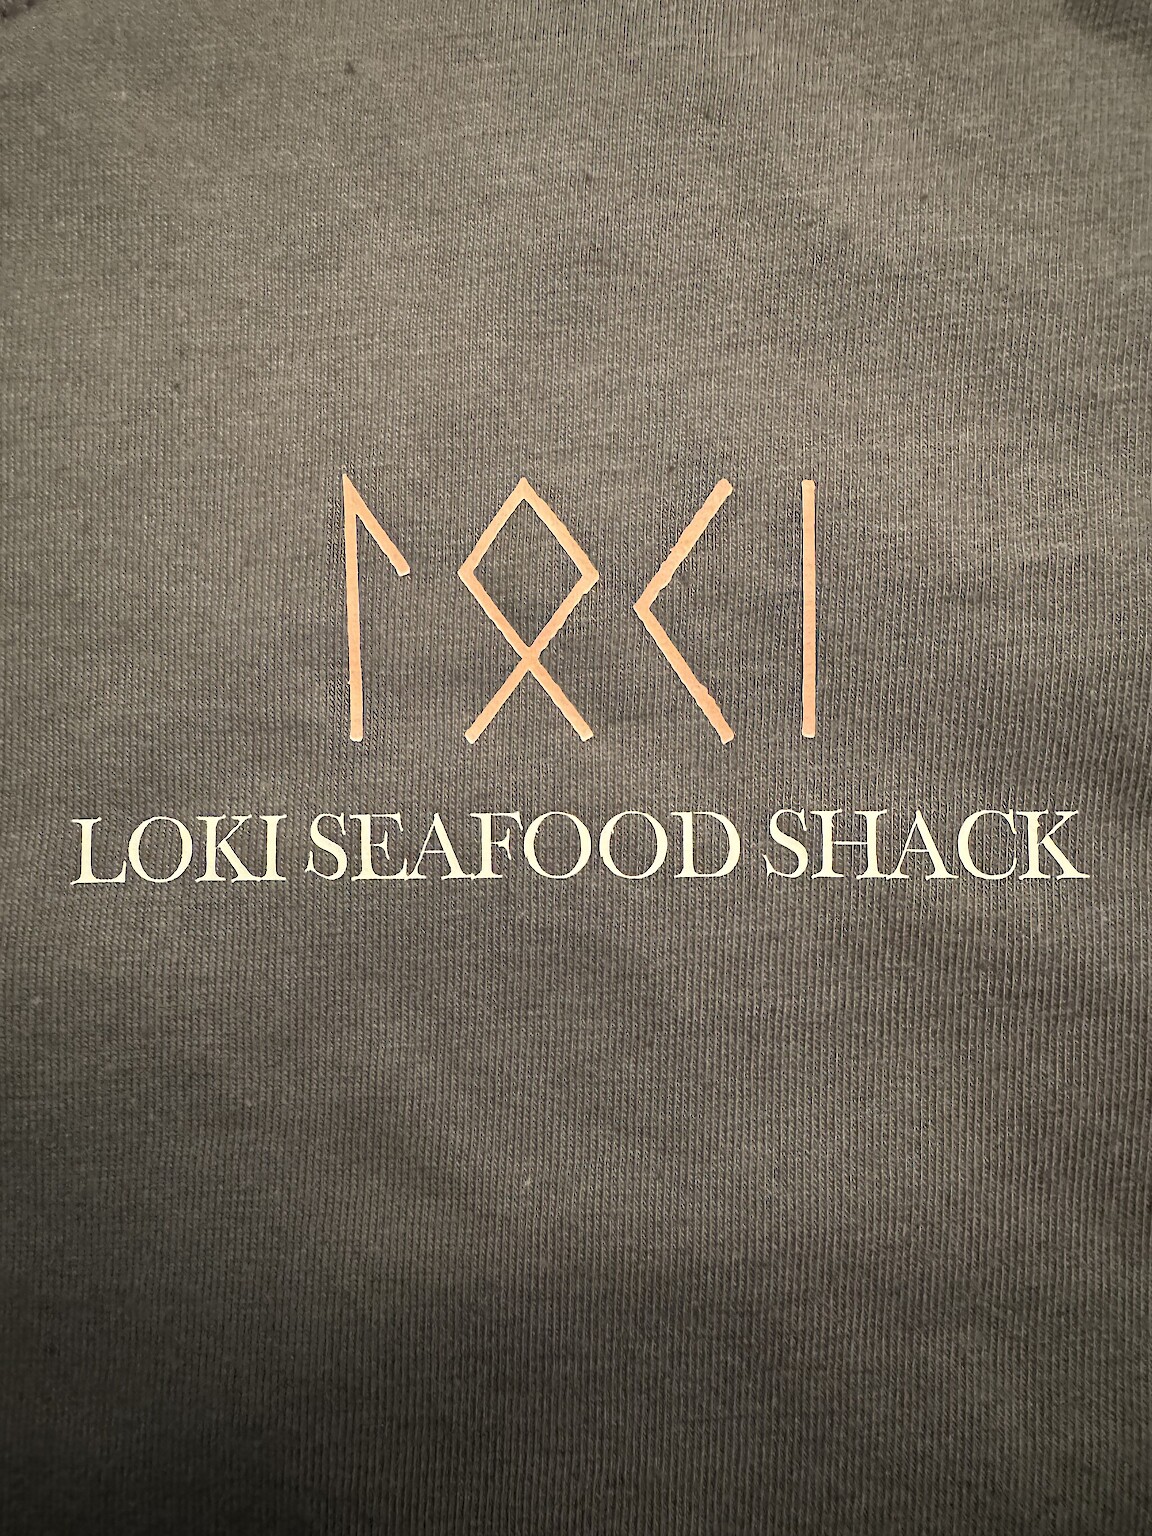 Loki Seafood Shack Logo